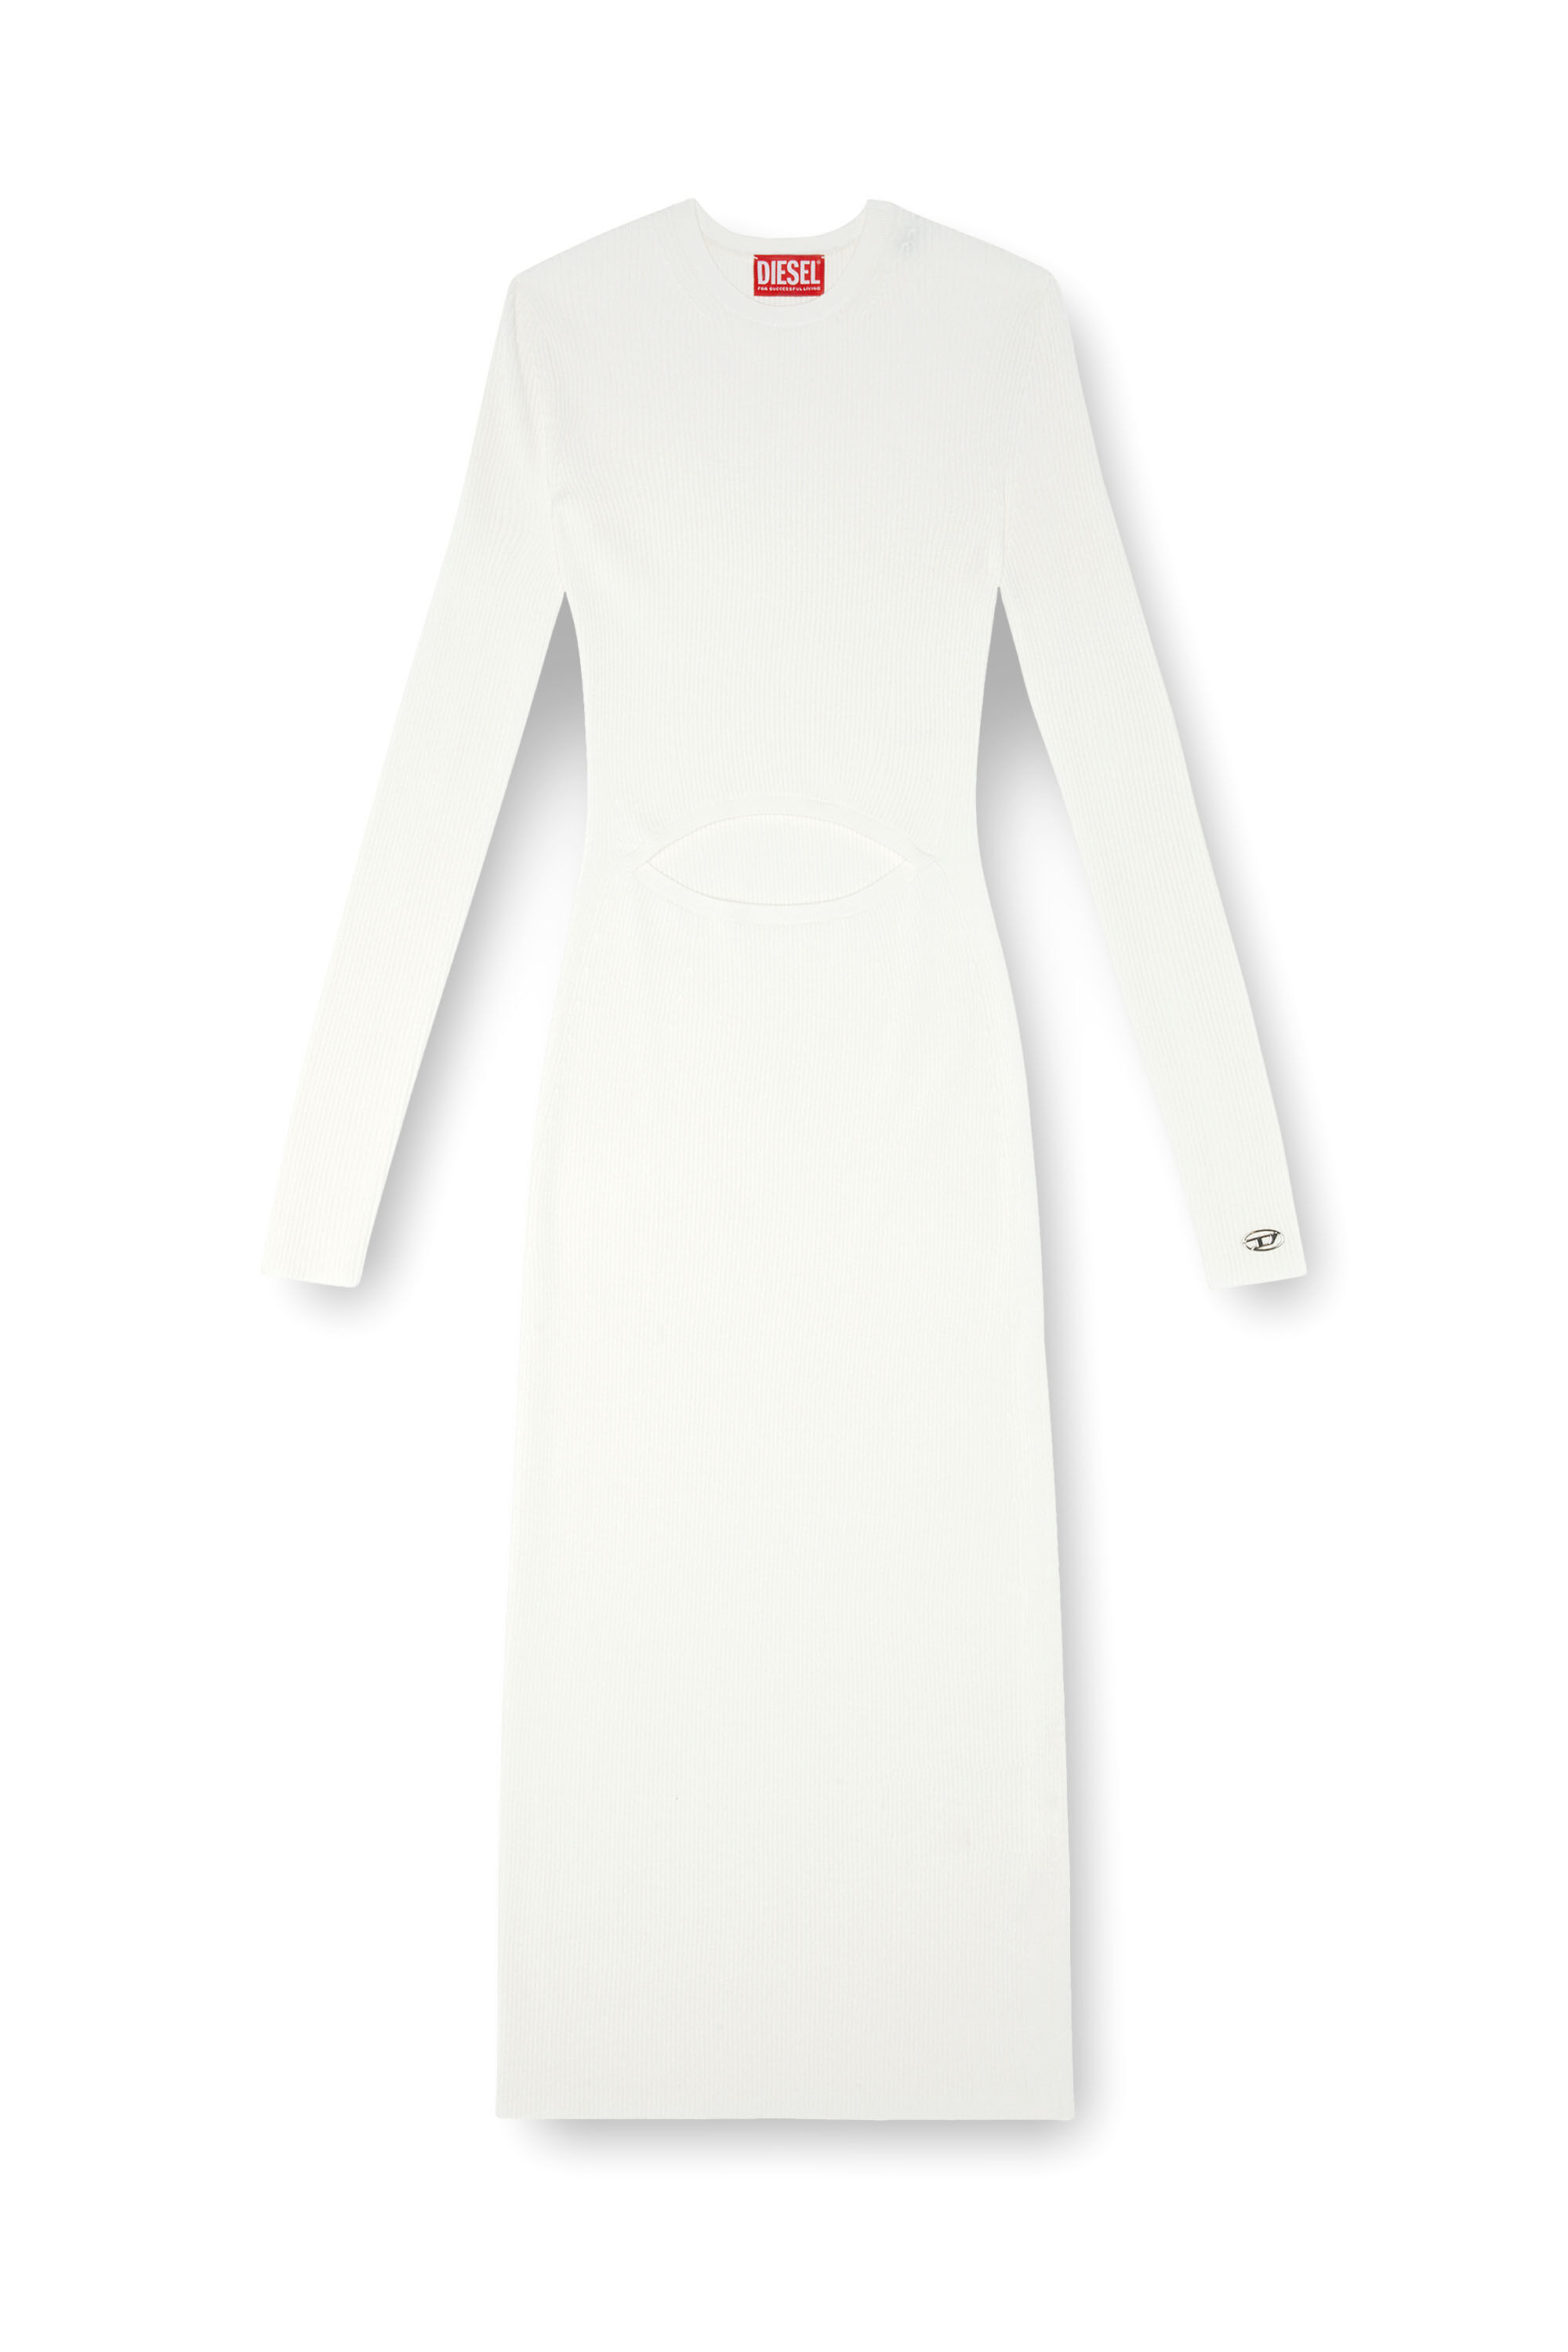 Diesel - M-PELAGOS, Damen Kleid aus Wollmischgewebe mit Cutout in Weiss - Image 2